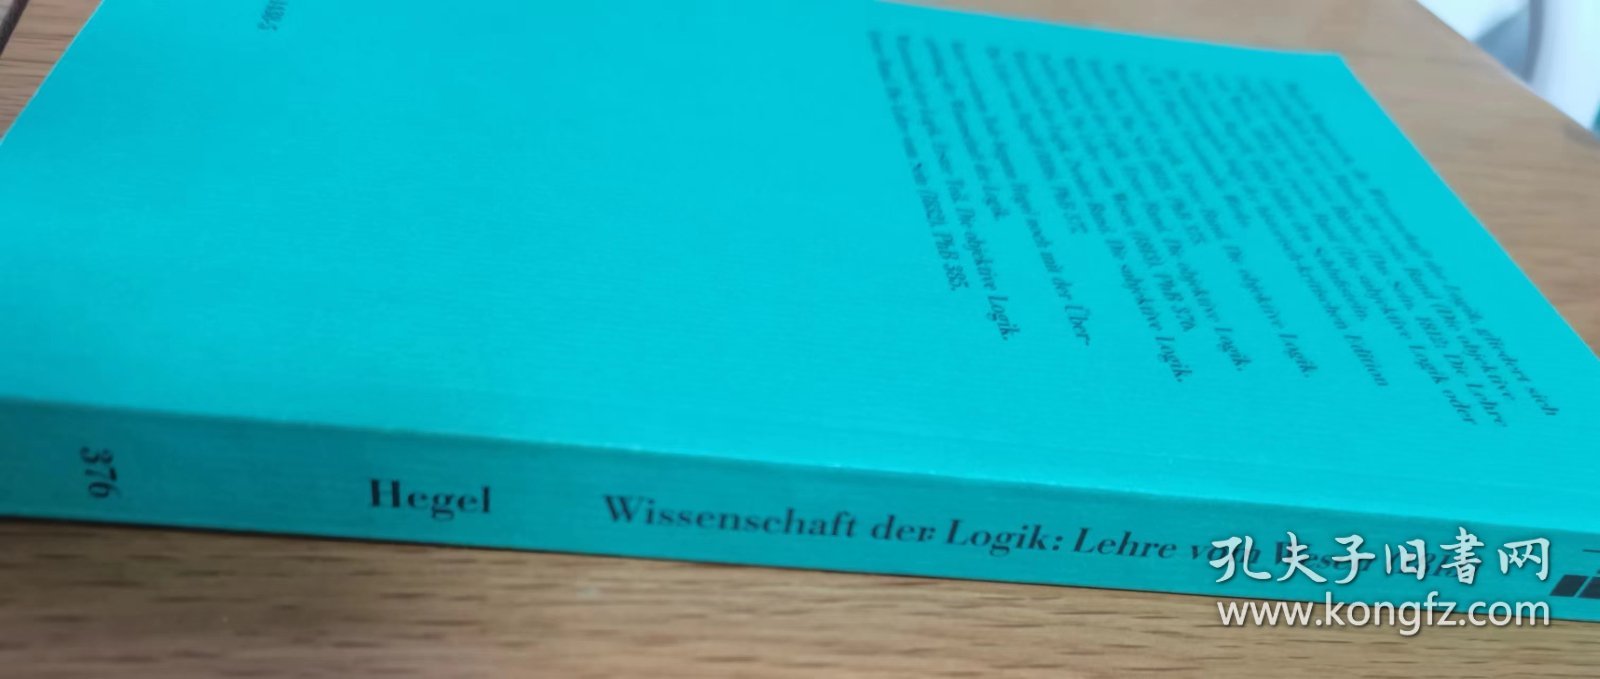 Georg Wilhelm Friedrich Hegel: Wissenschaft der Logik. Erster Band. Die objektive Logik. Zweites Buch